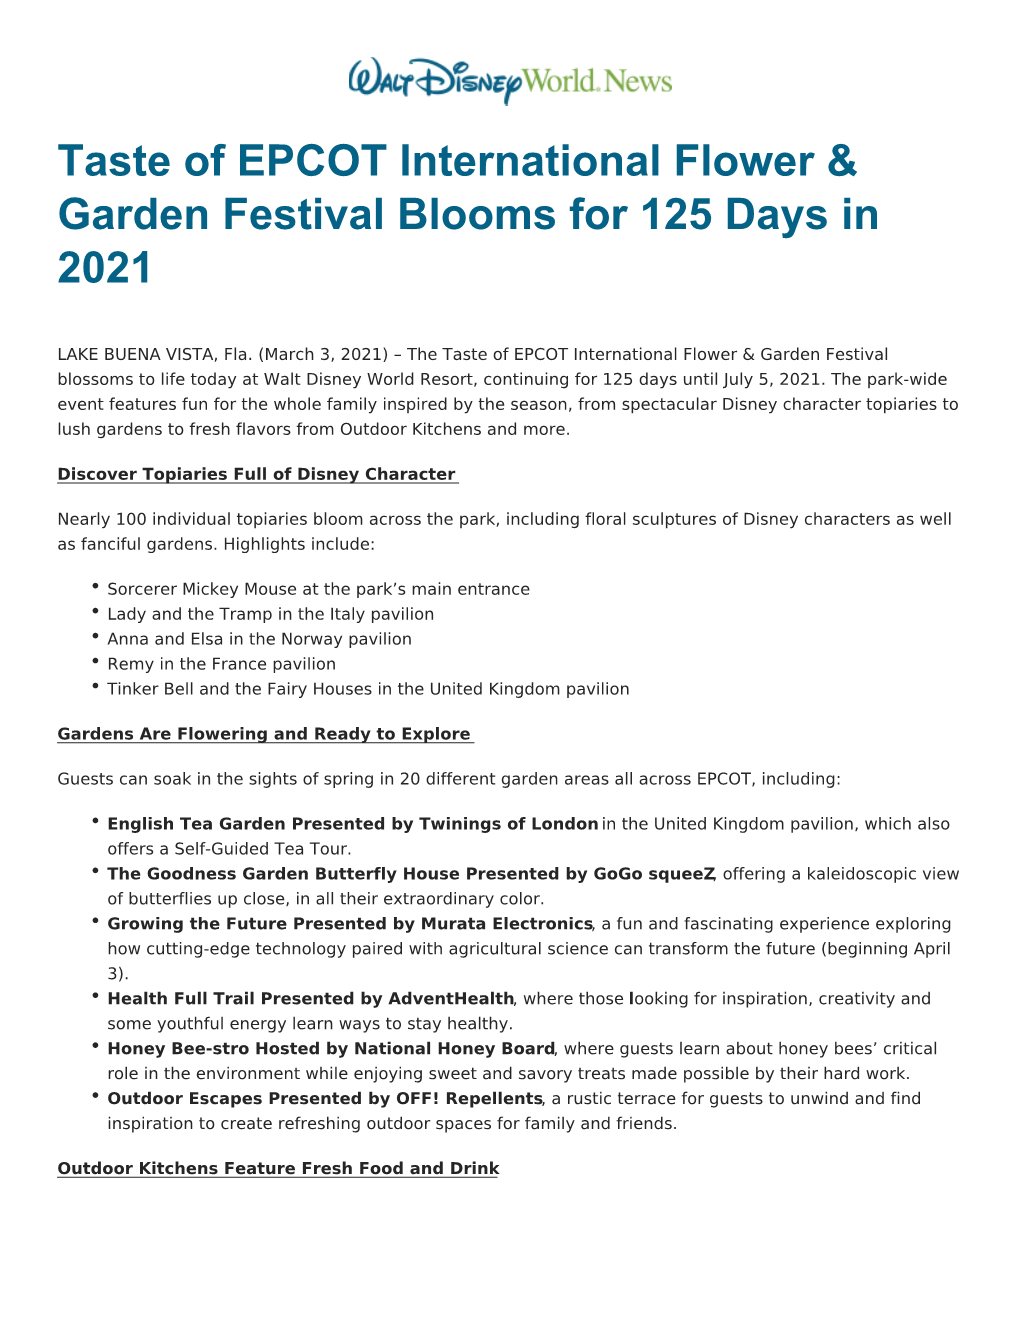 Taste of EPCOT International Flower & Garden Festival Blooms for 125